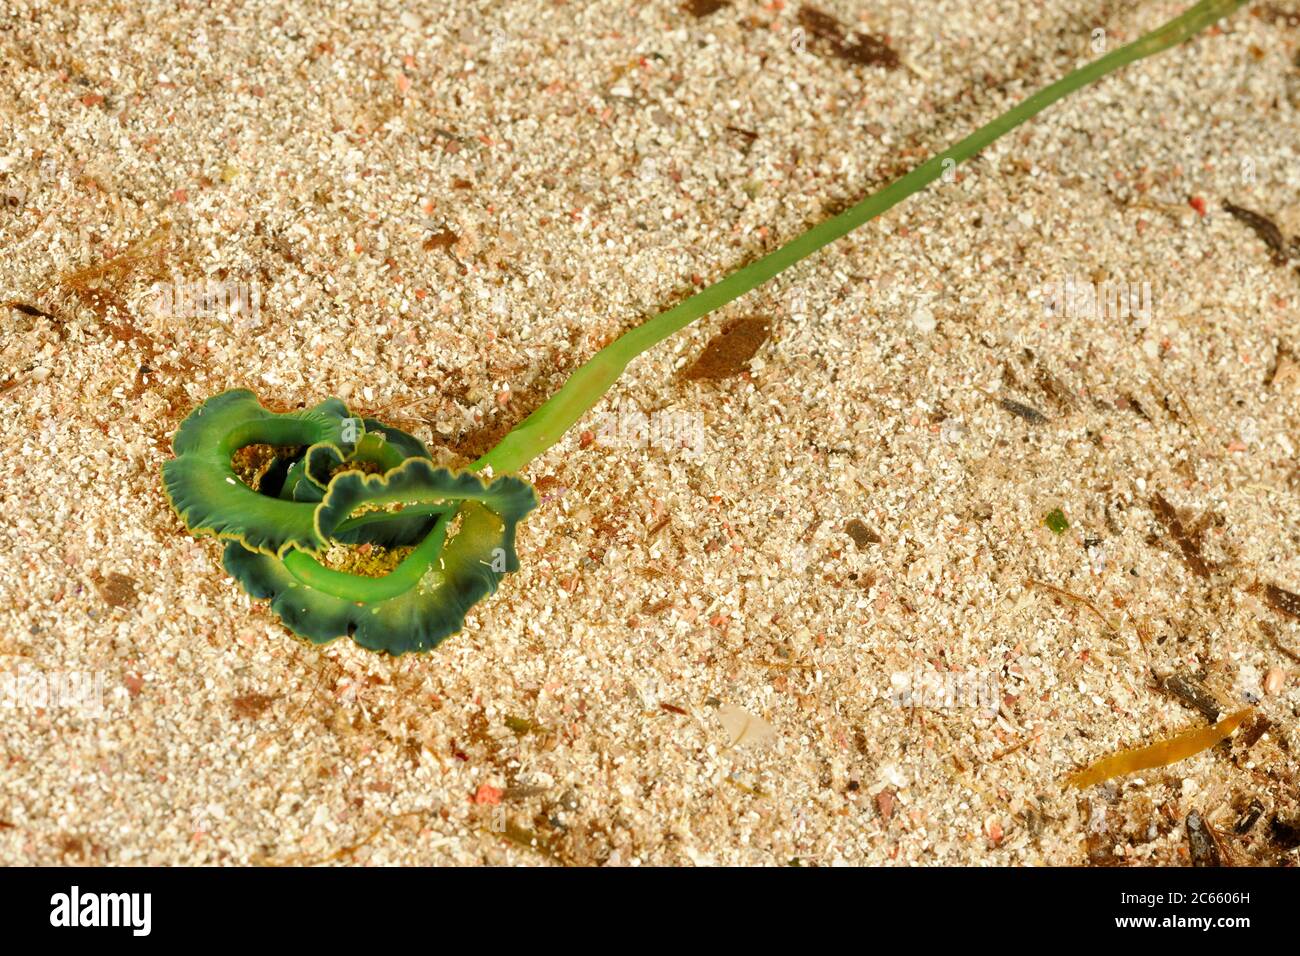 Green Spoonworm (Bonellia viridis) Stock Photo